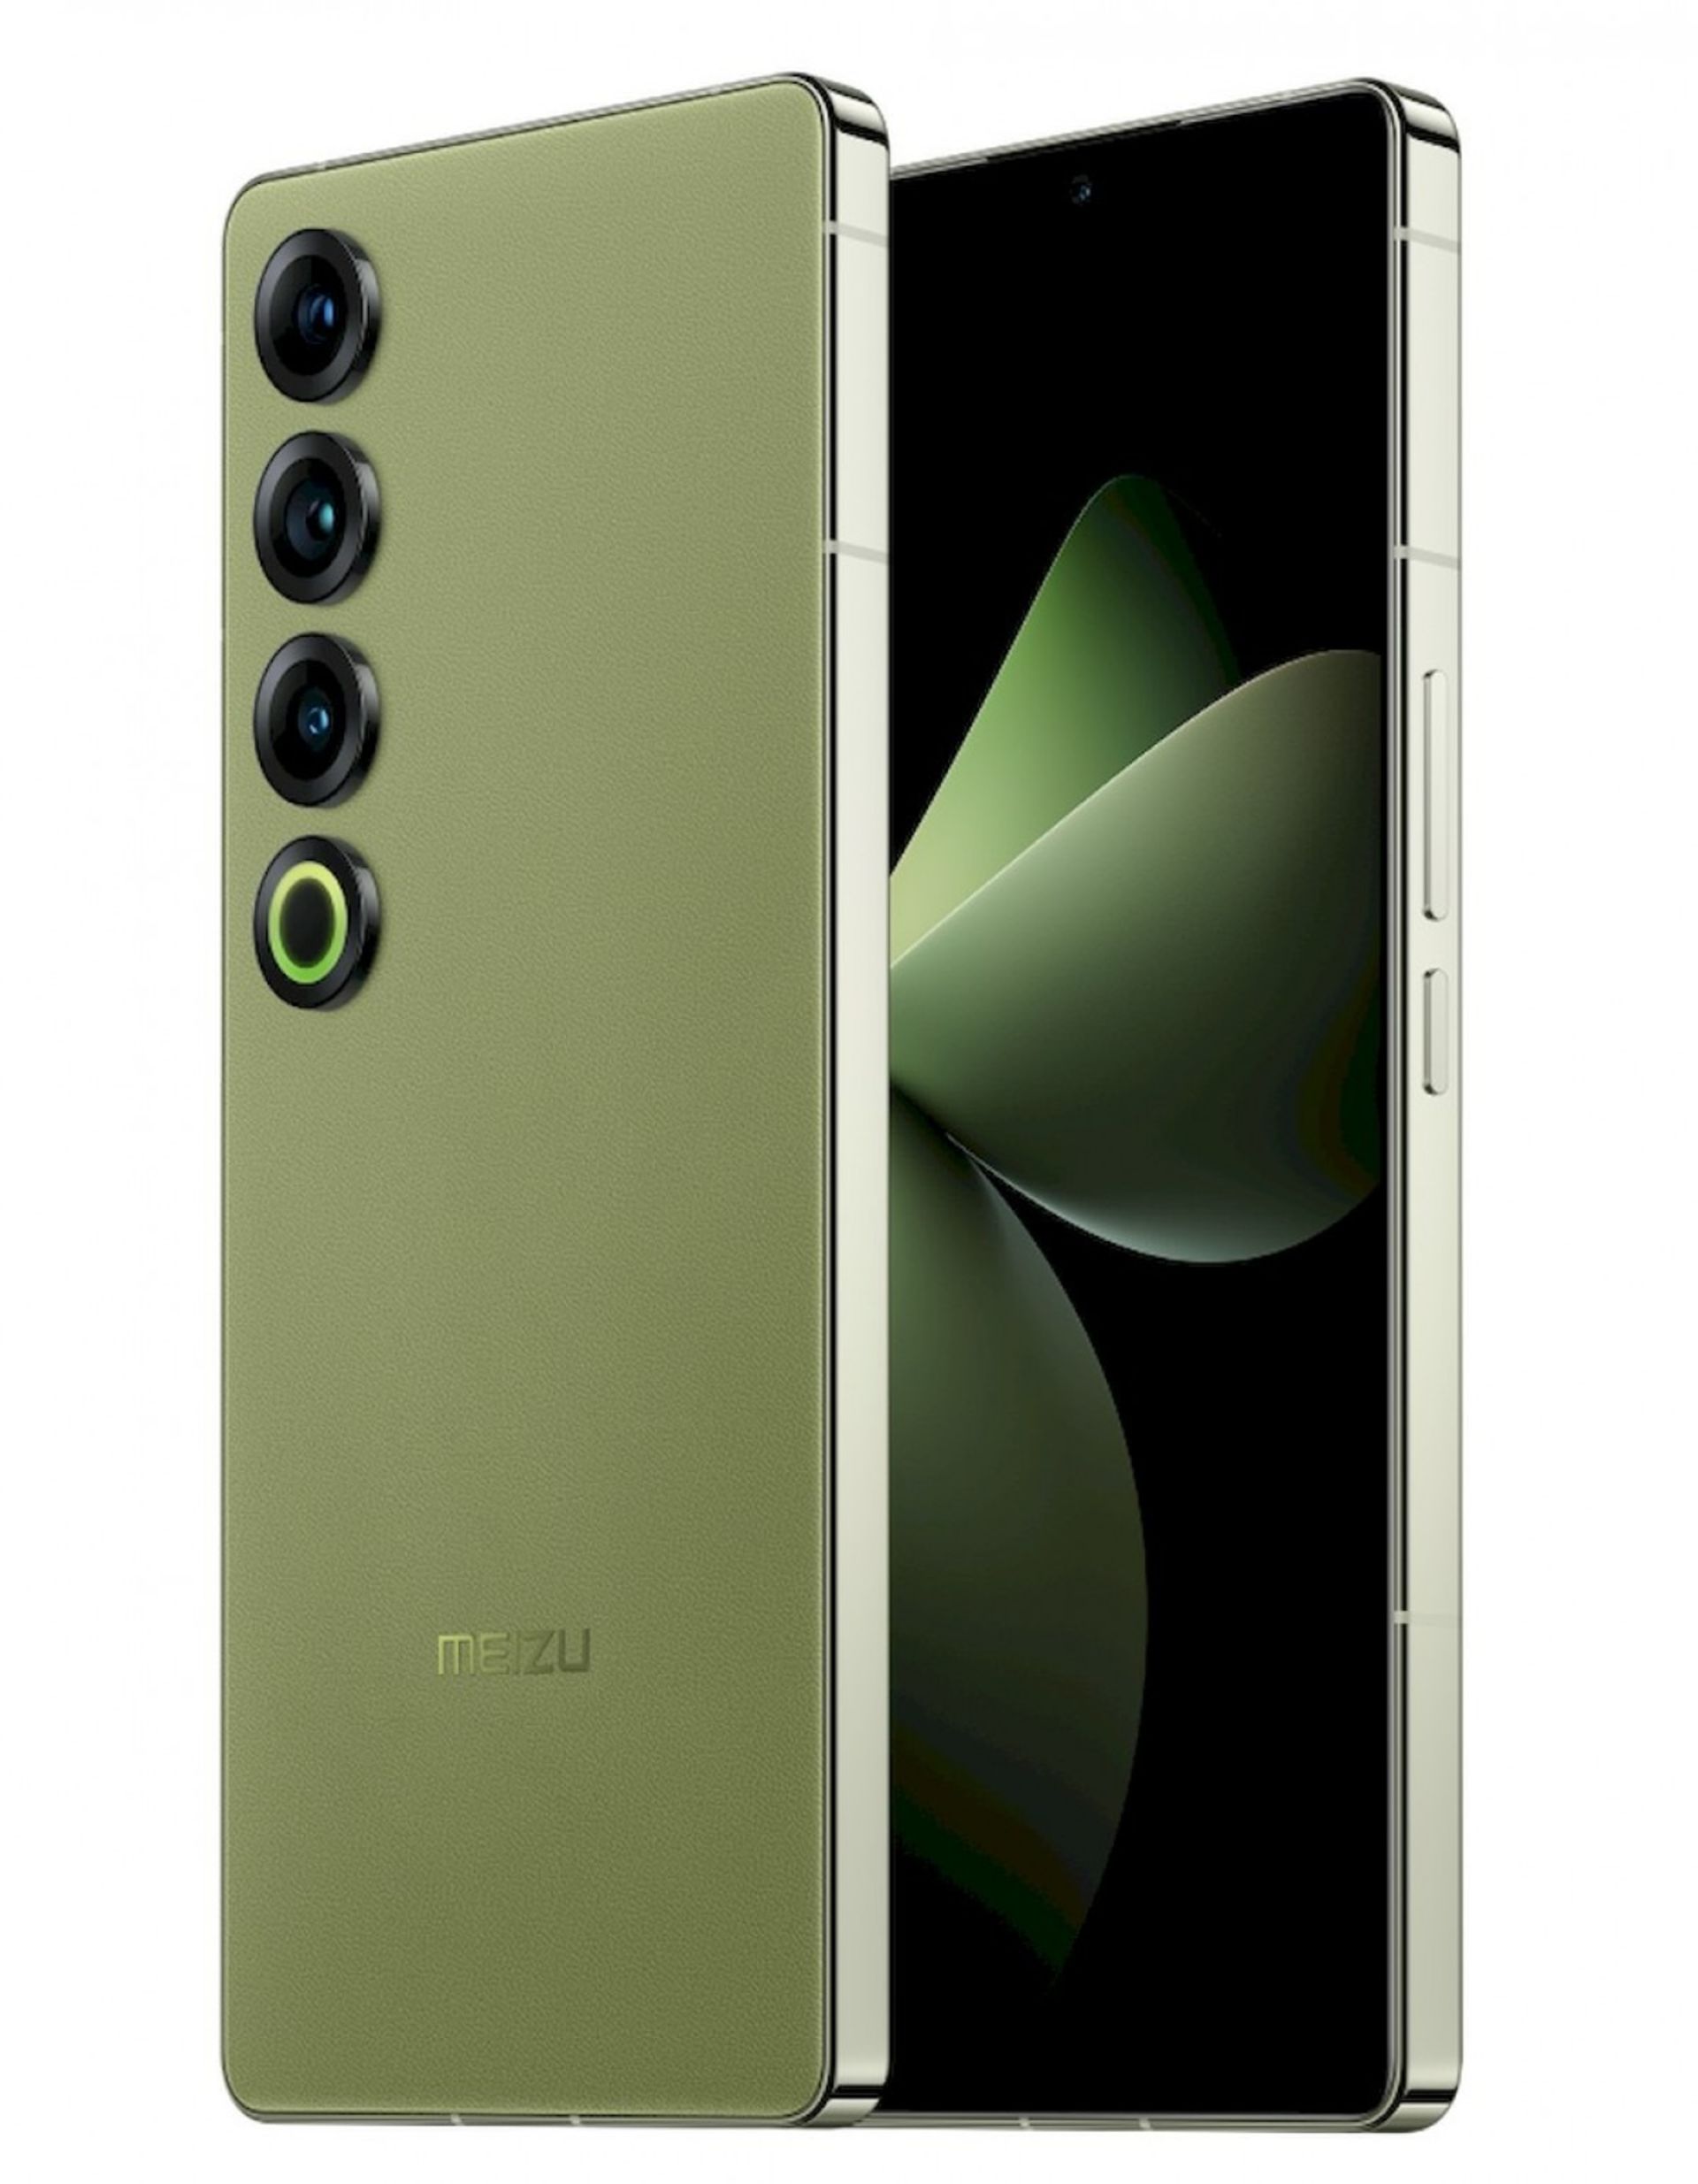 گوشی میزو ۲۱ پرو از نمای جلو و پشت رنگ سبز